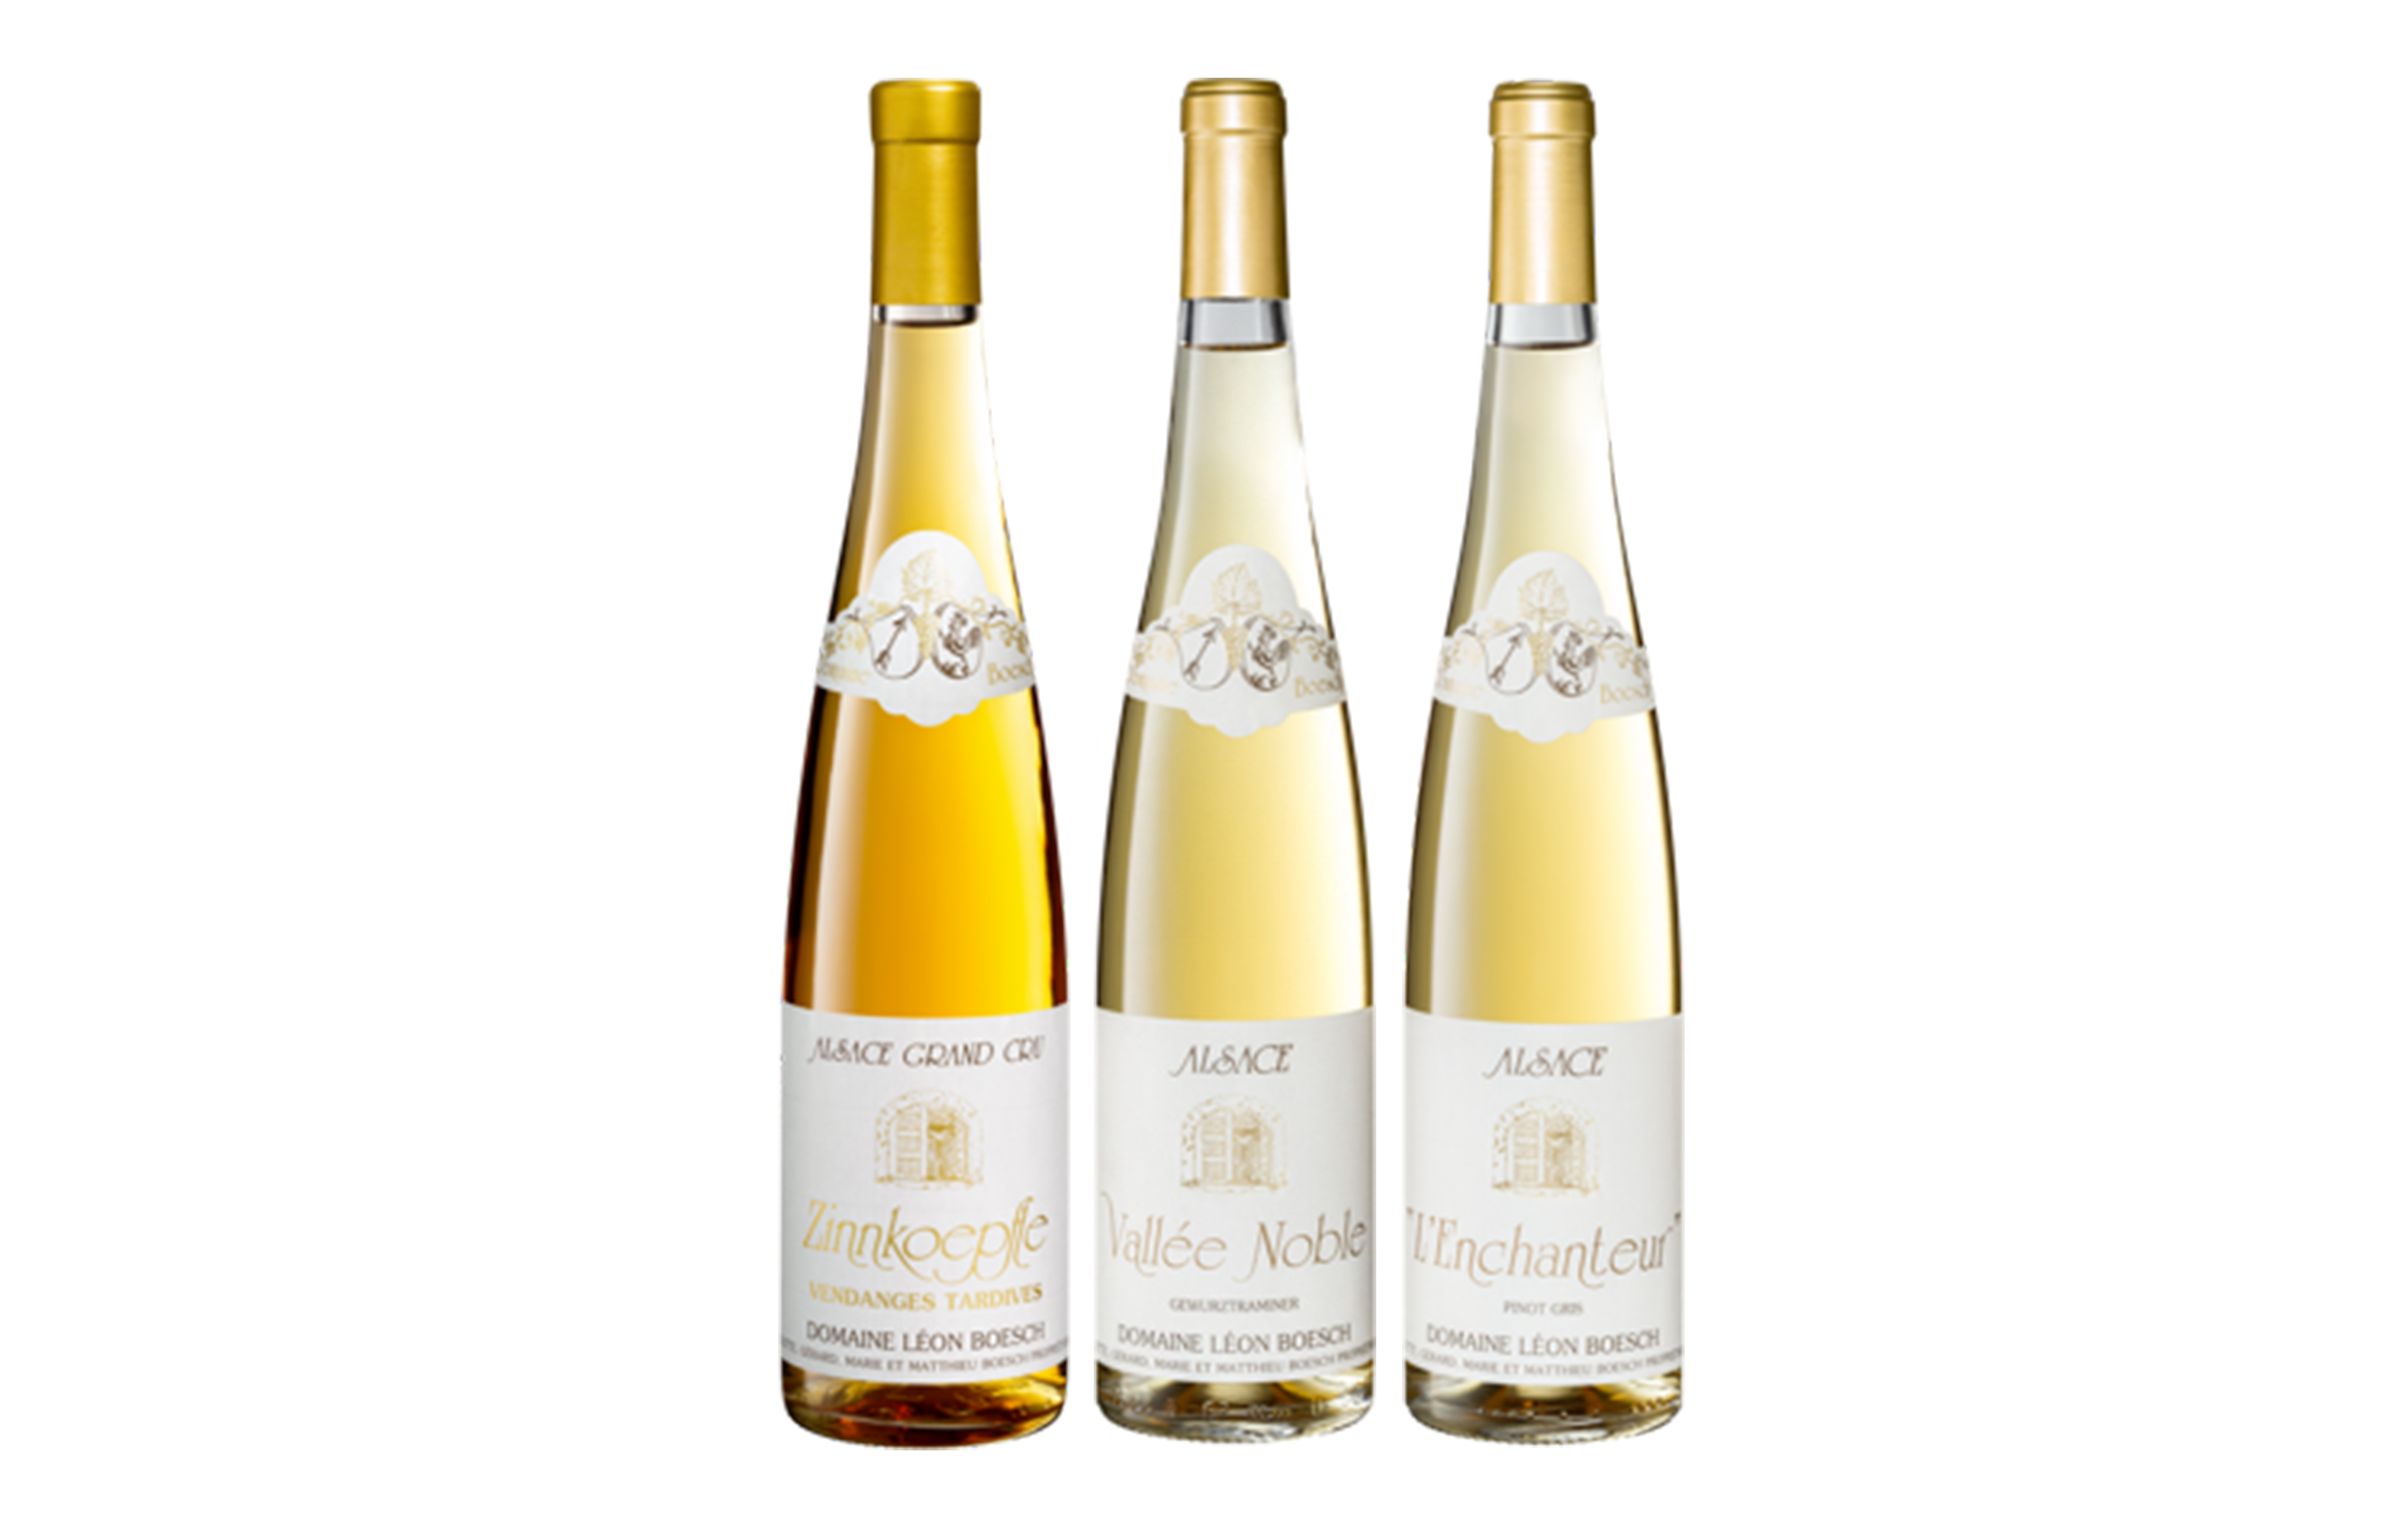 Les vins blancs moelleux du Domaine Boesch